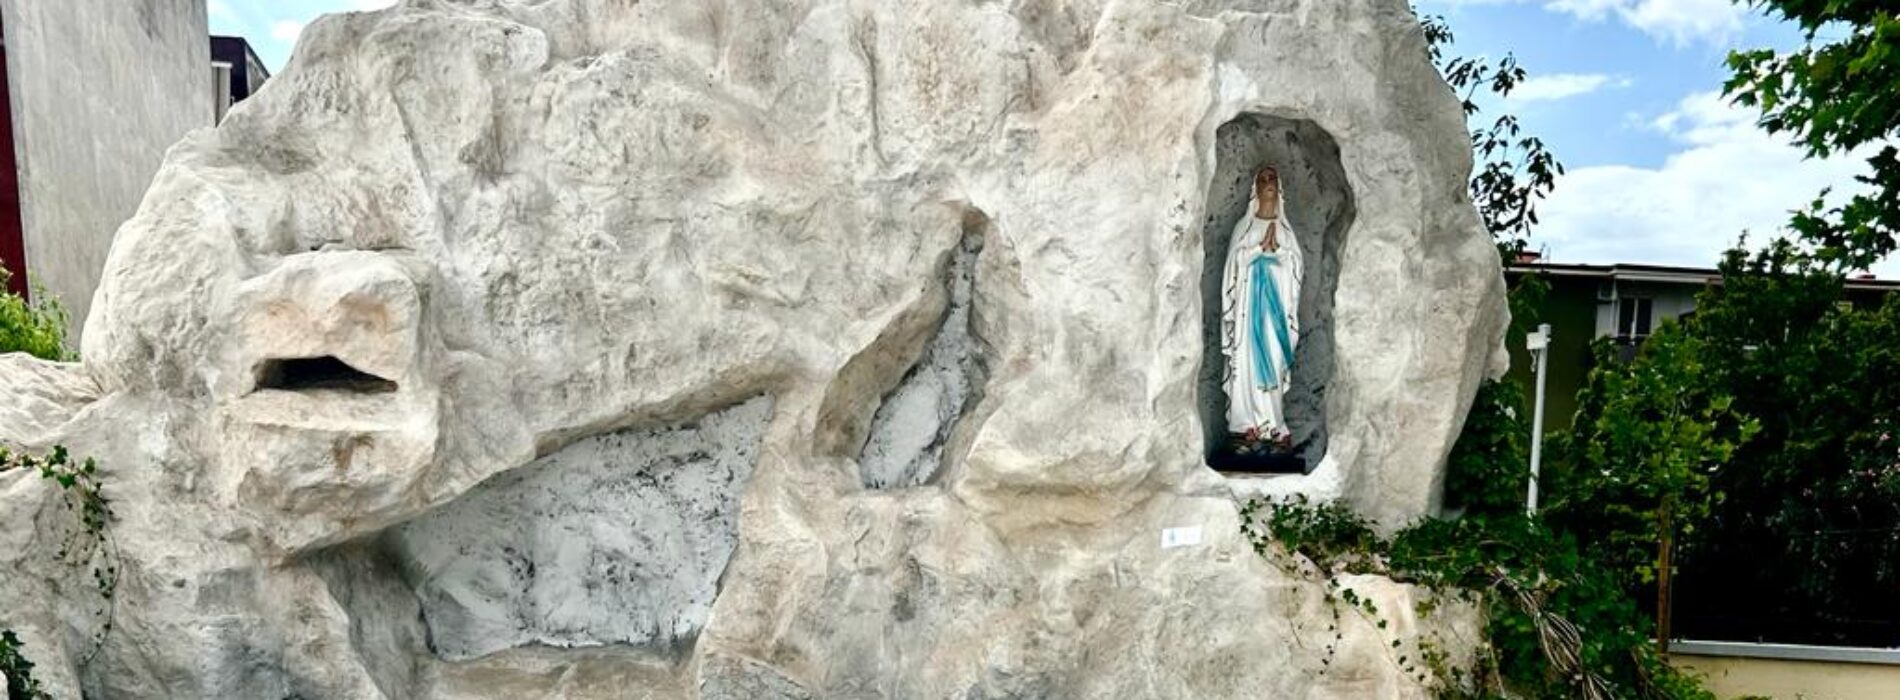 Natività di Maria, la parrocchia di Lourdes celebra l’evento